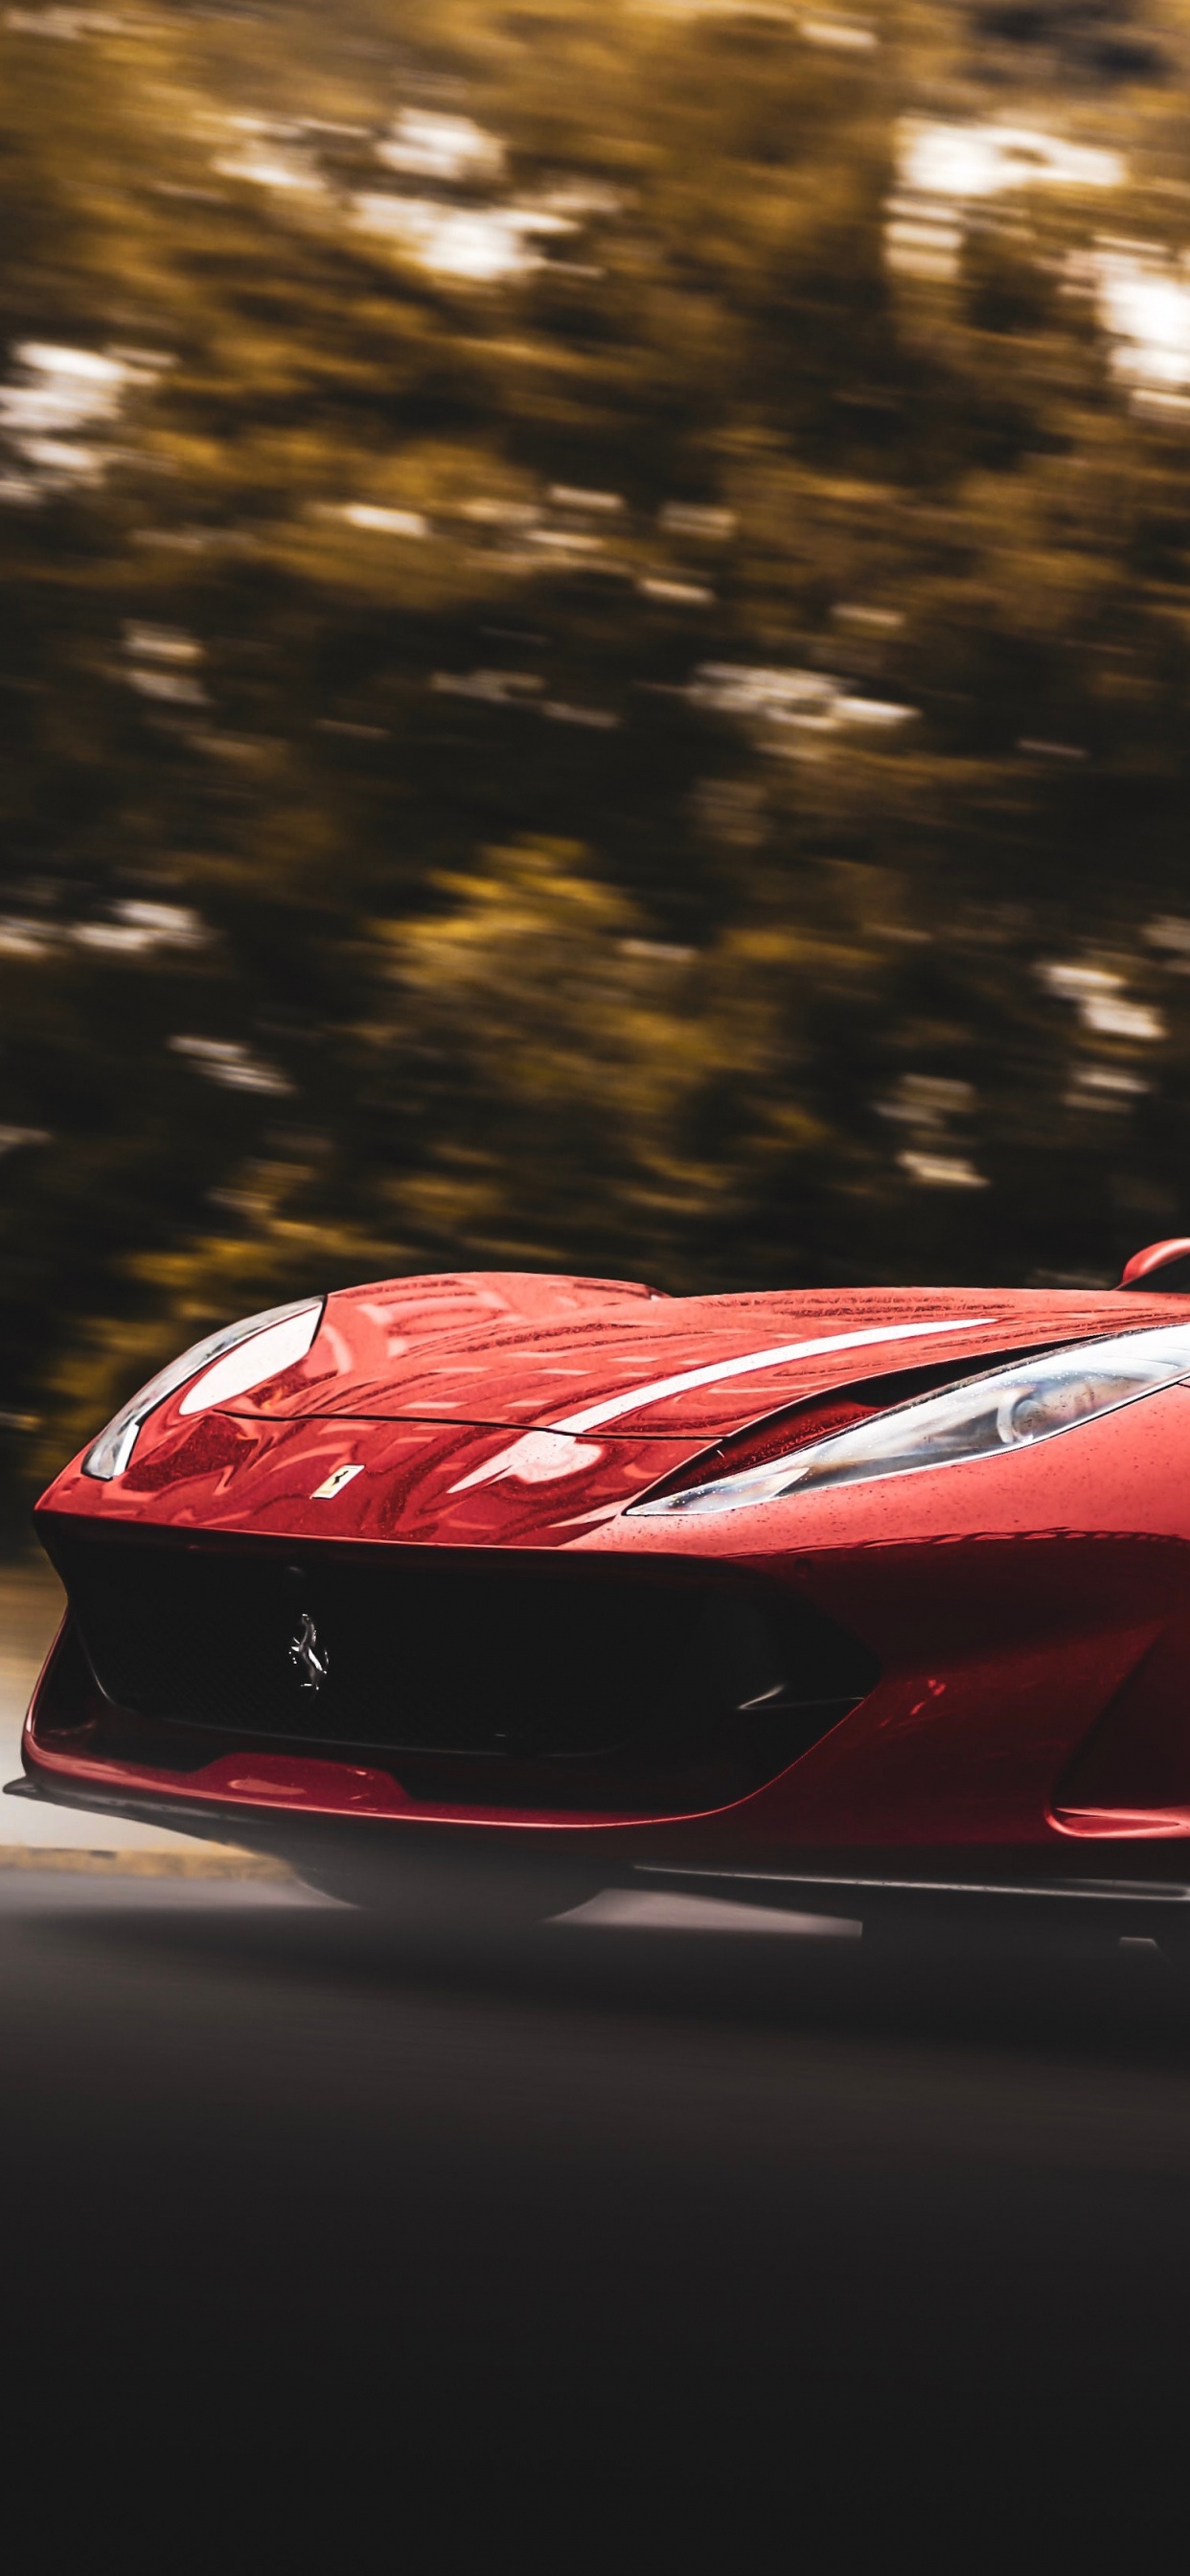 Ferrari 458 Italia Rojo en la Carretera Durante el Día. Wallpaper in 1242x2688 Resolution